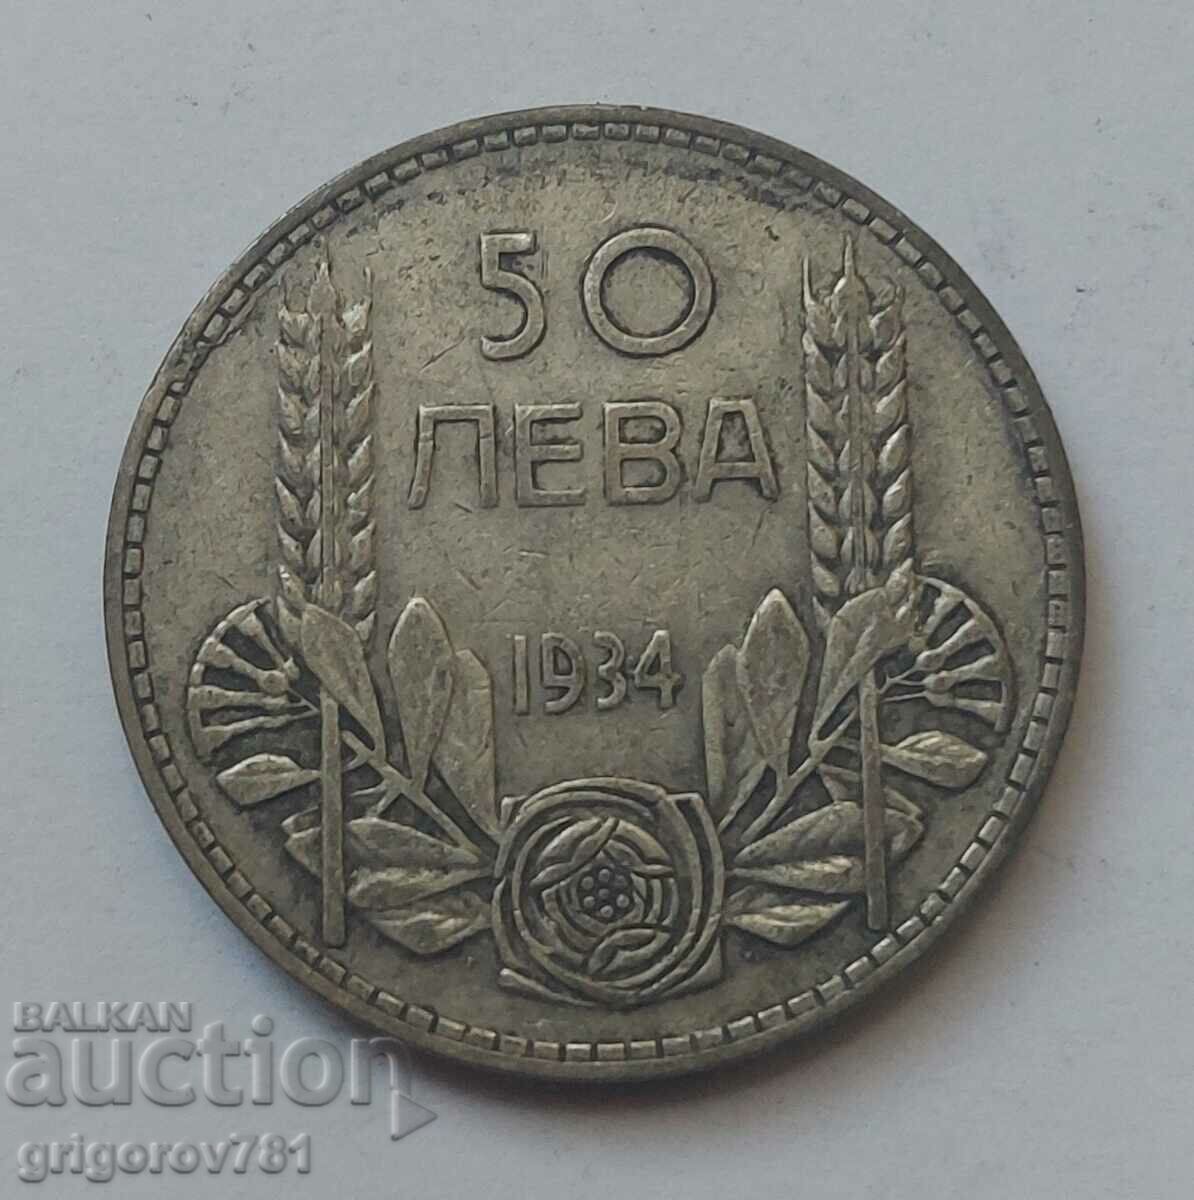 Ασήμι 50 λέβα Βουλγαρία 1934 - ασημένιο νόμισμα #12